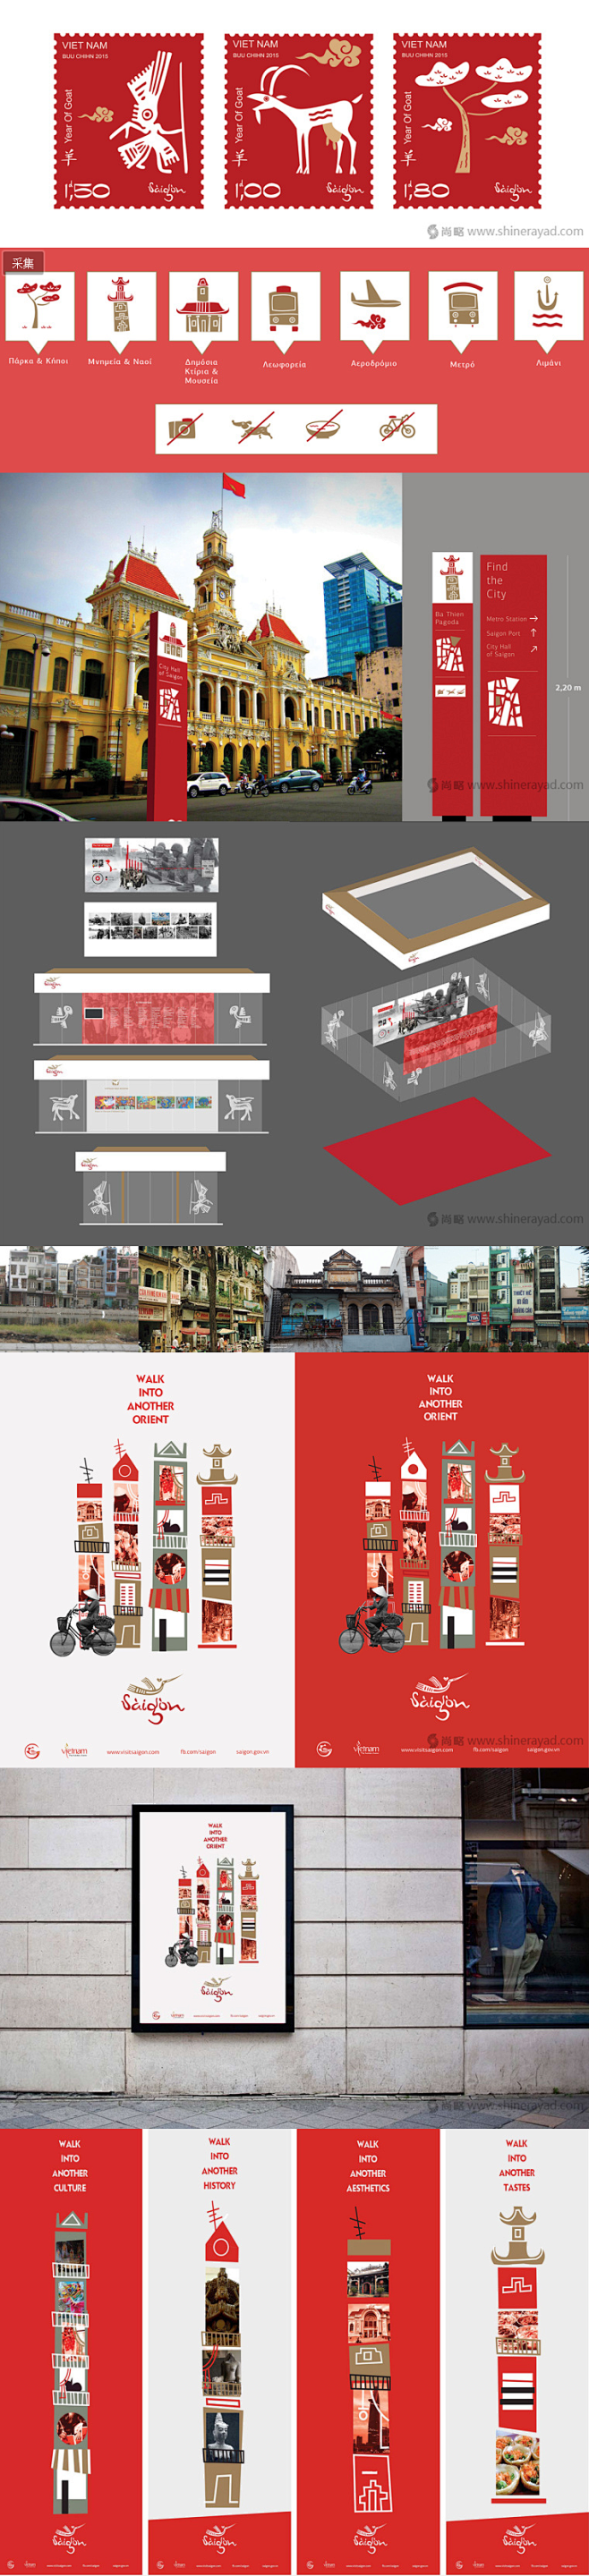 西贡城市旅游品牌形象设计LOGO设计VI...